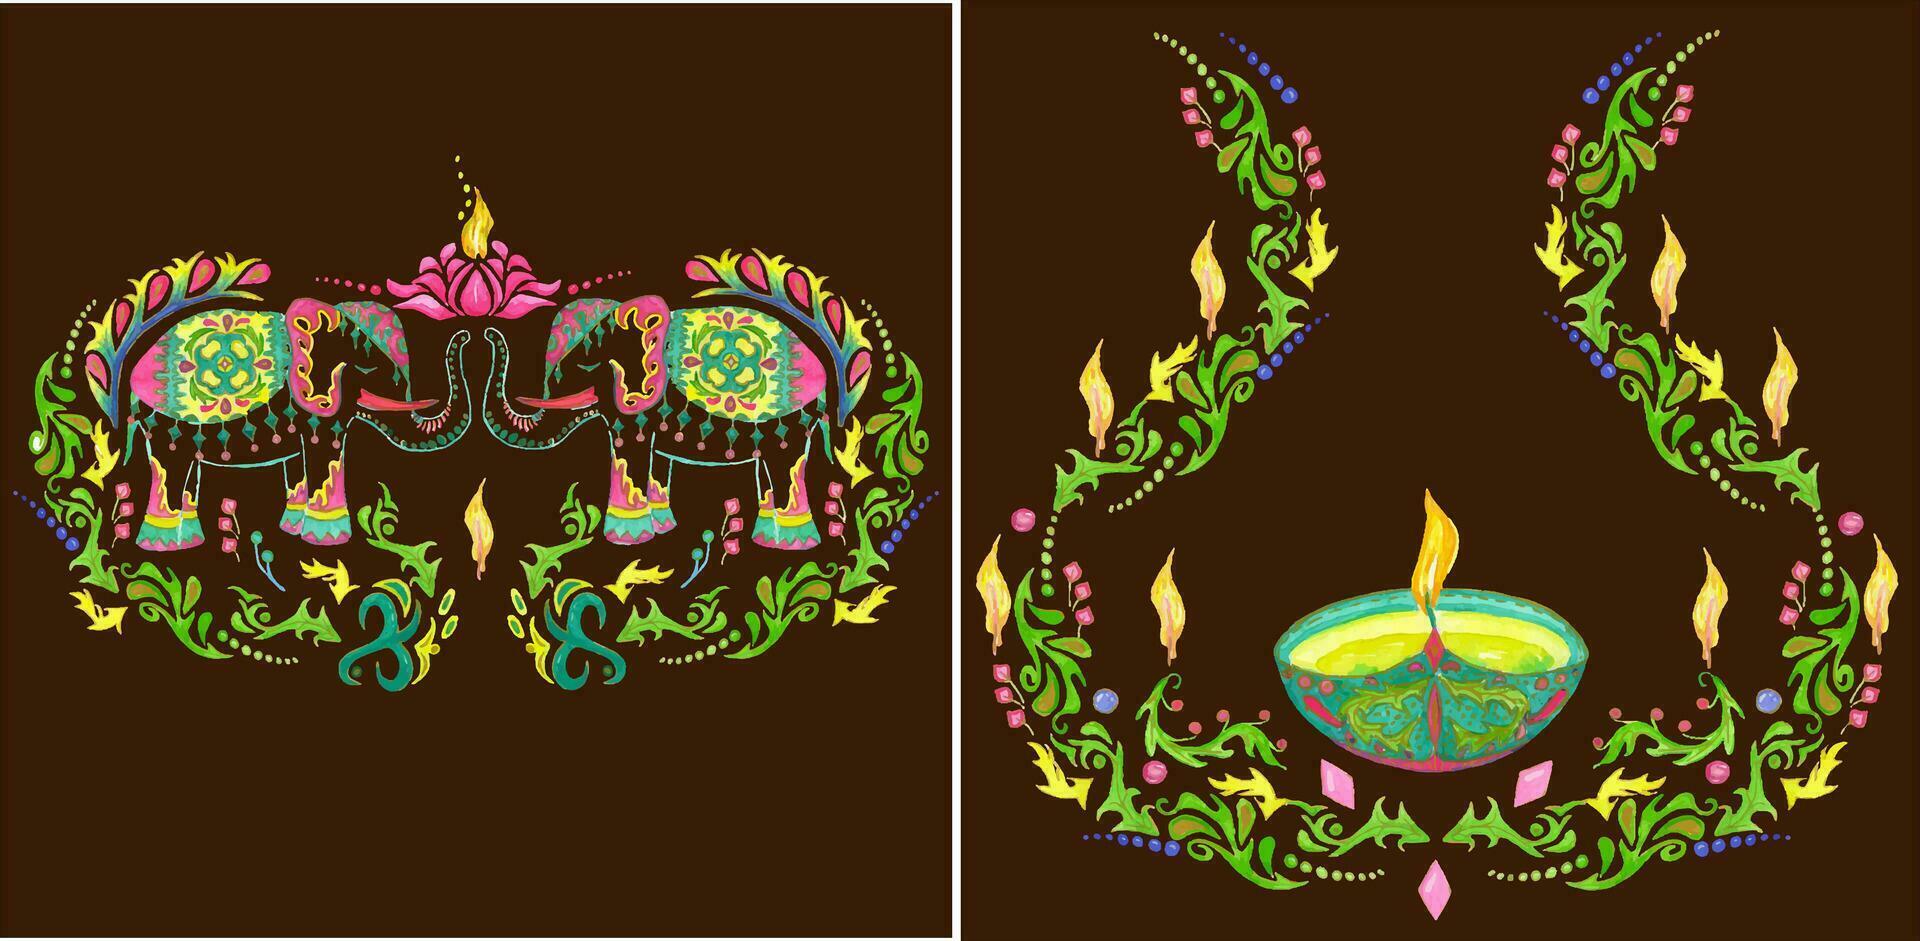 uppsättning av 2 illustrationer för diwali. Allt element är målad med akvareller vektor